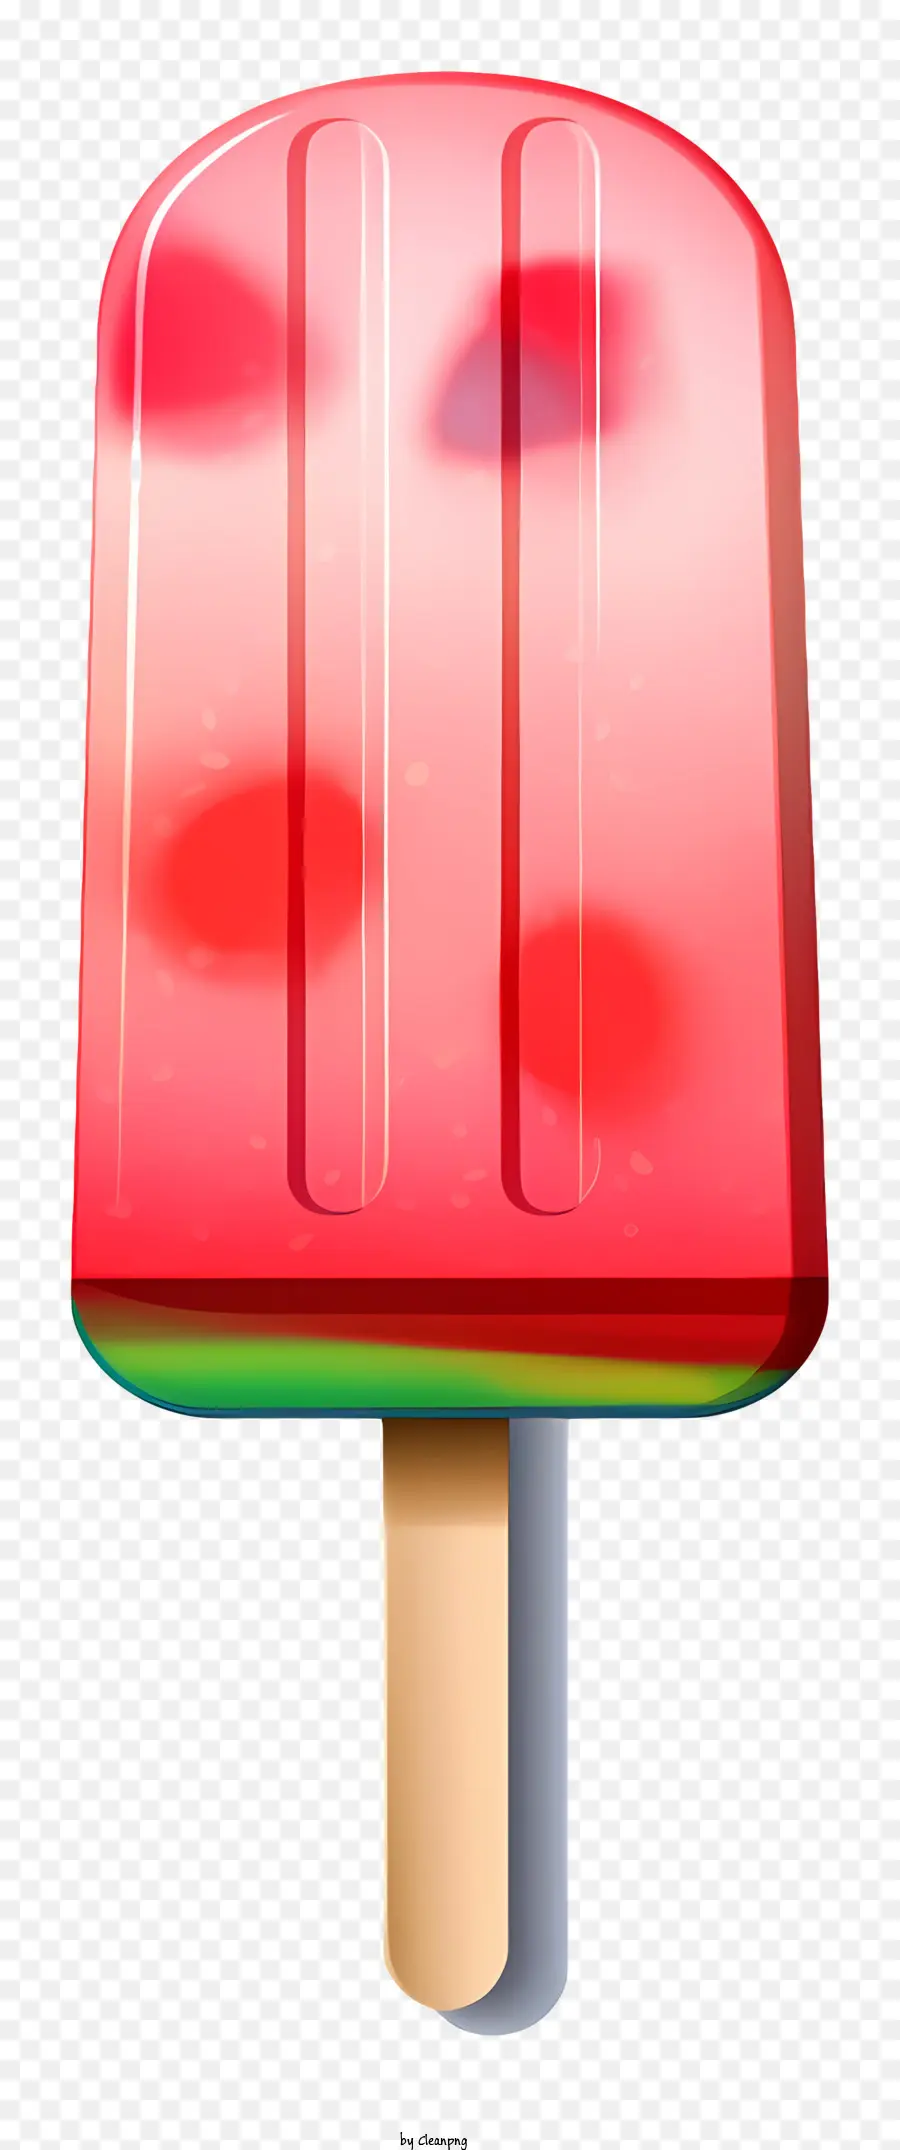 Acqua di gelato al gelato cono gelato rosso e verde gelato dessert ciliegia - Cone gelato ad anguria con topping di ciliegia